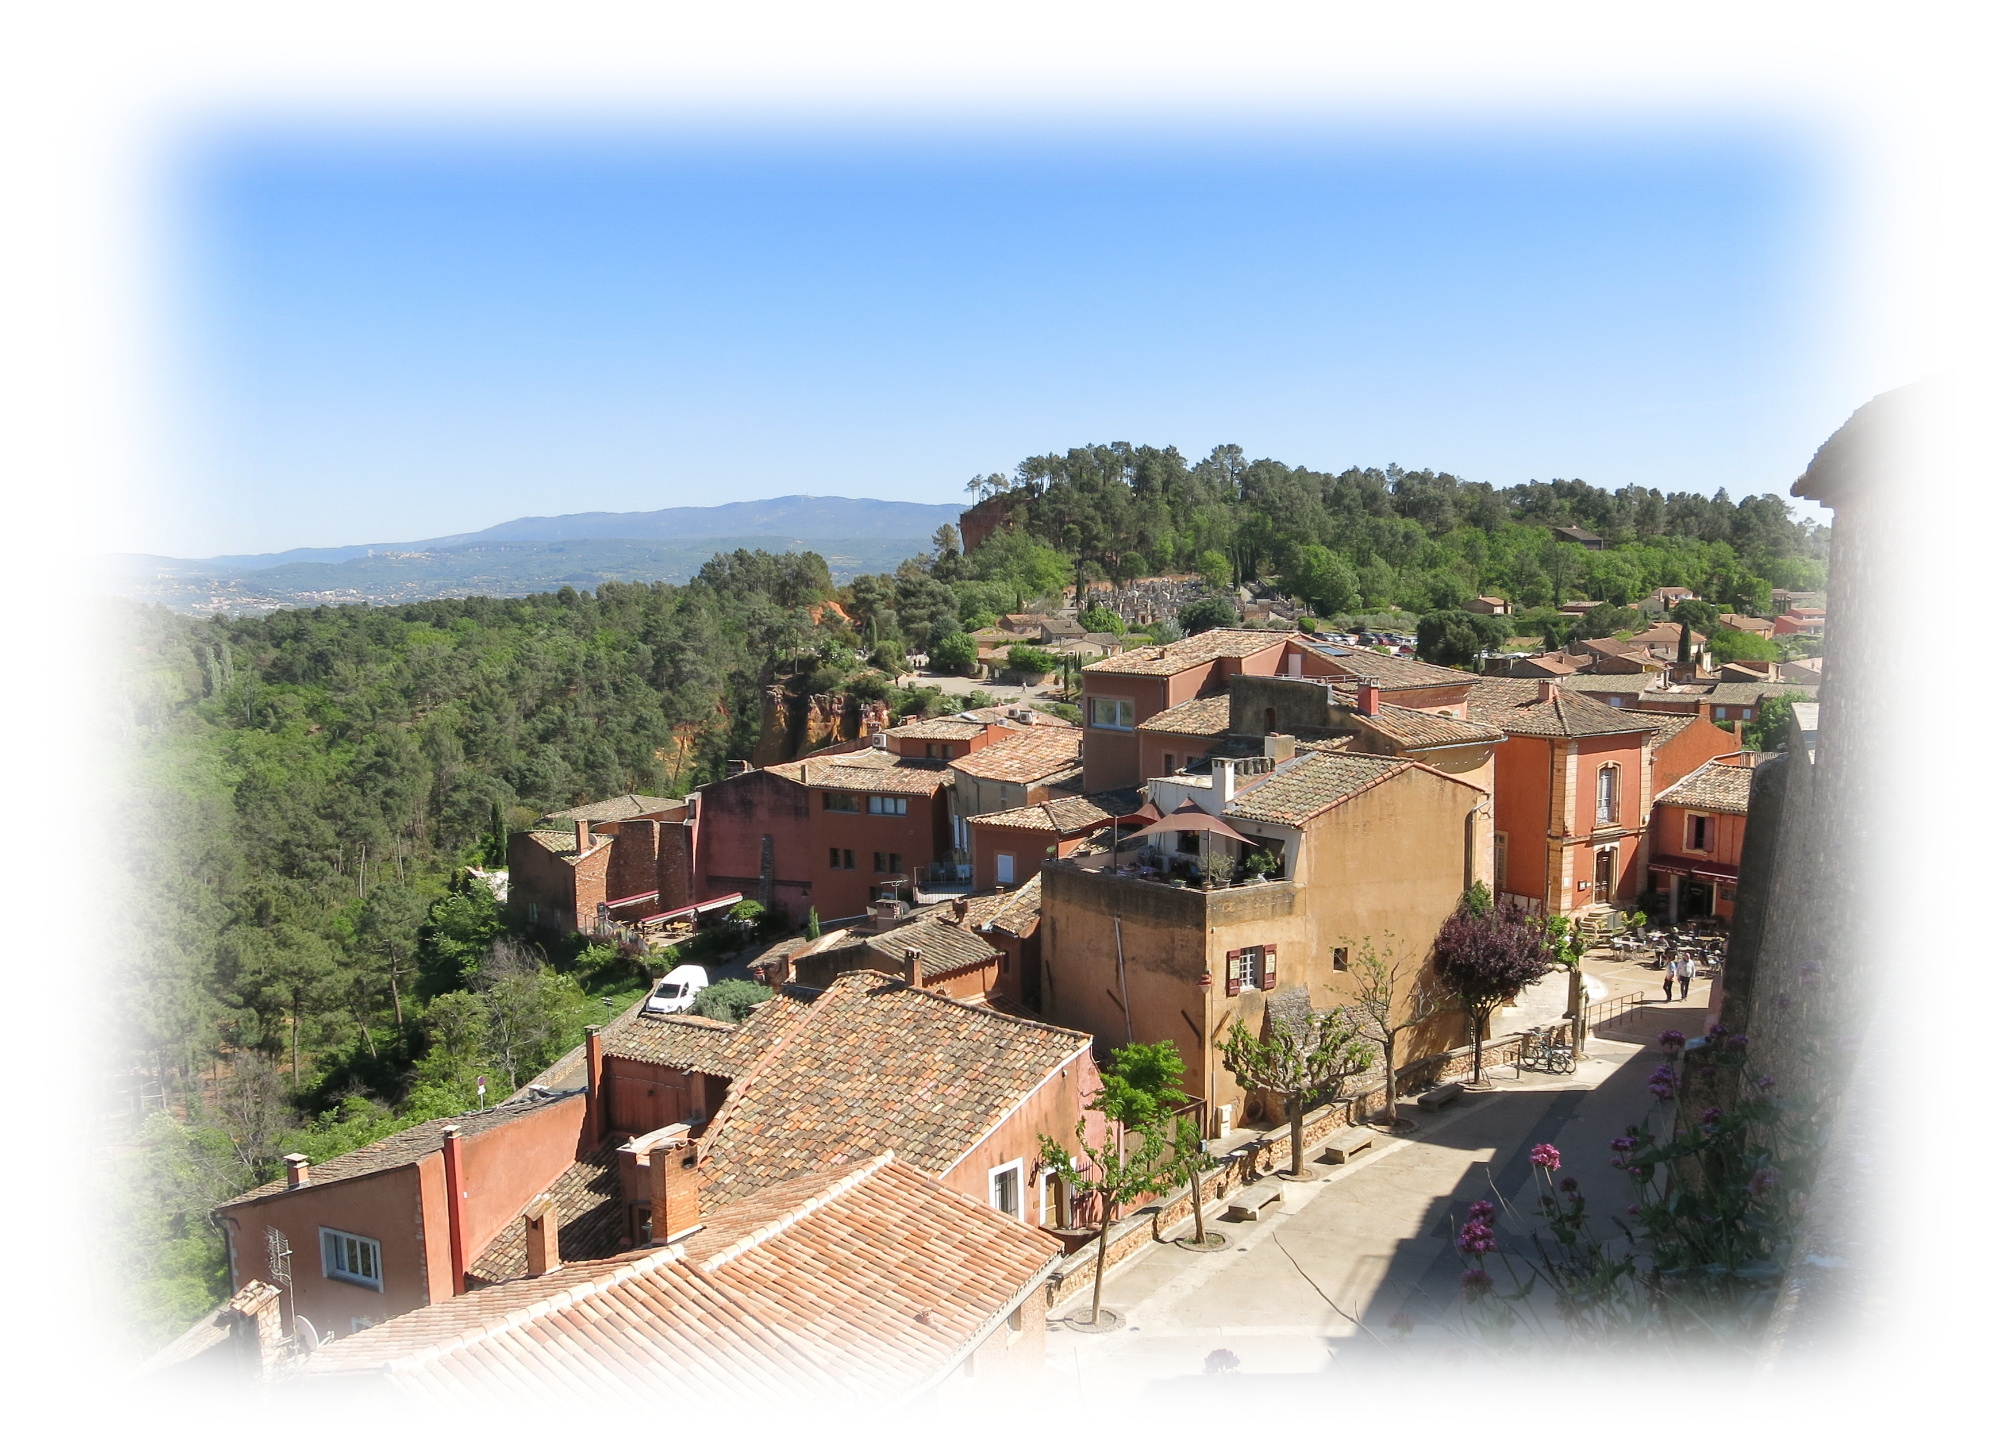 Winding street of Roussillon village